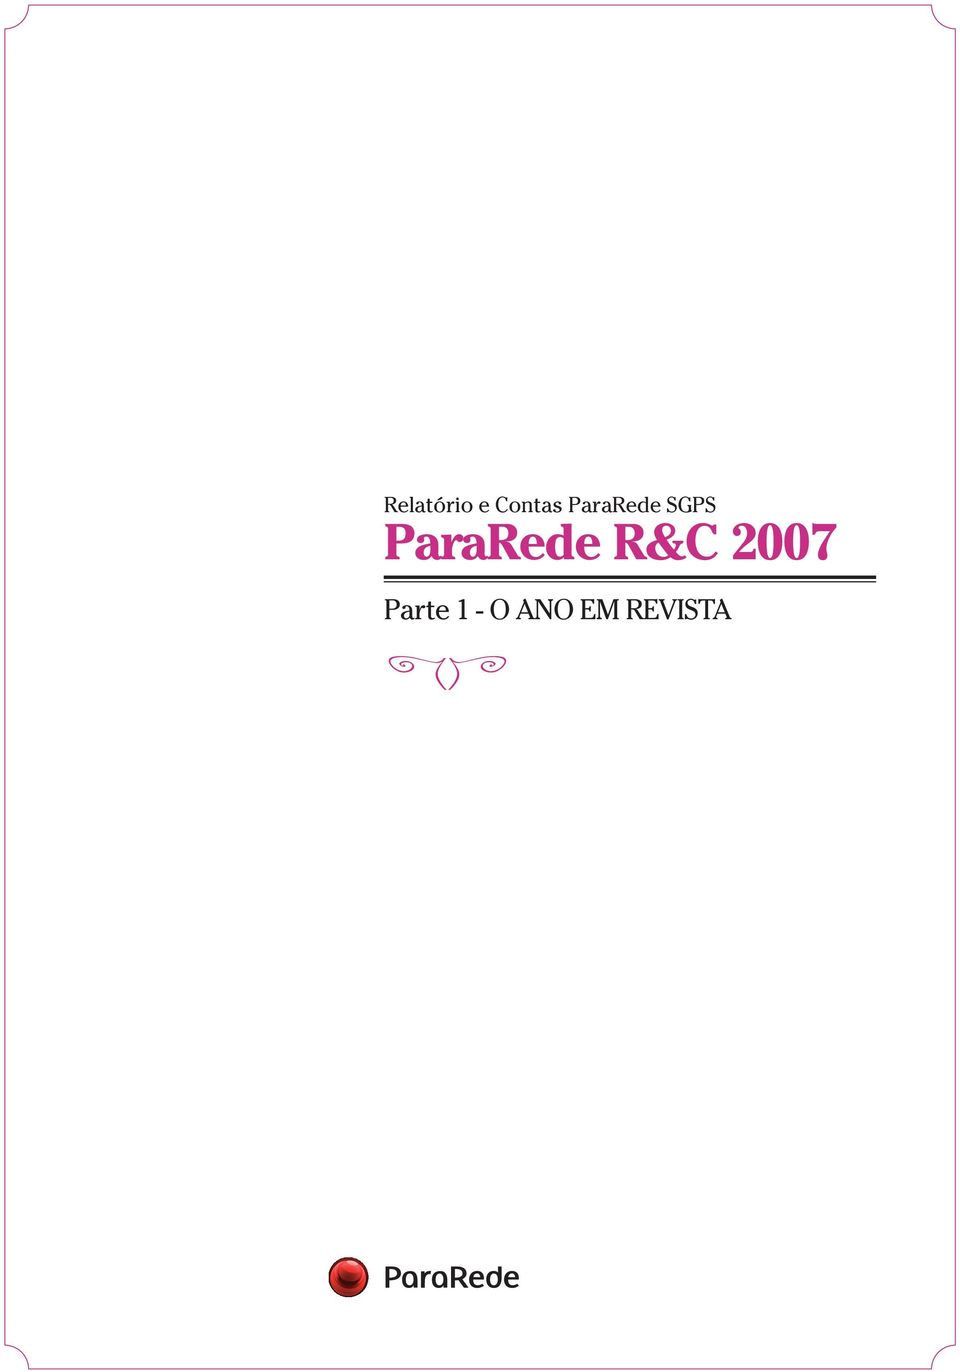 ParaRede R&C 2007